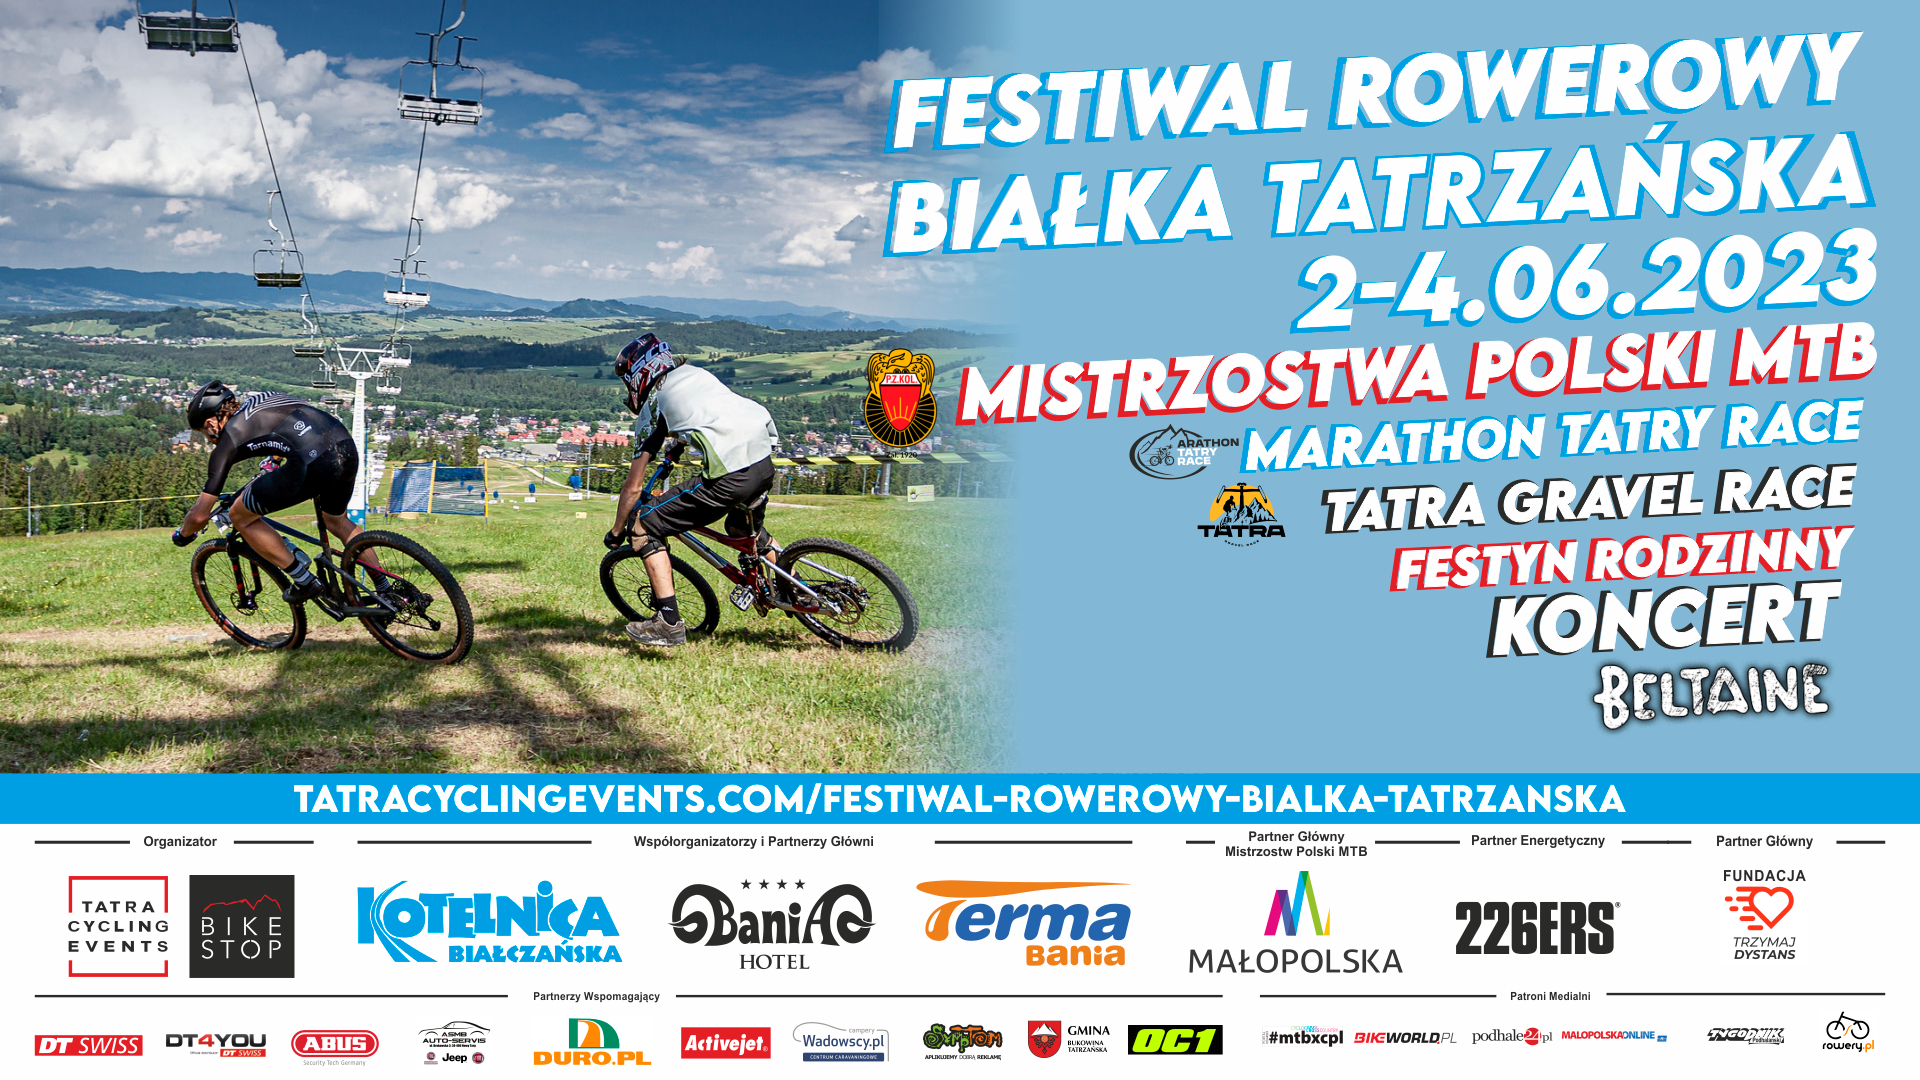 Mistrzostwa Polski MTB XCO w ramach Festiwalu Rowerowego Białka Tatrzańska 2023 | ZAPOWIEDŹ